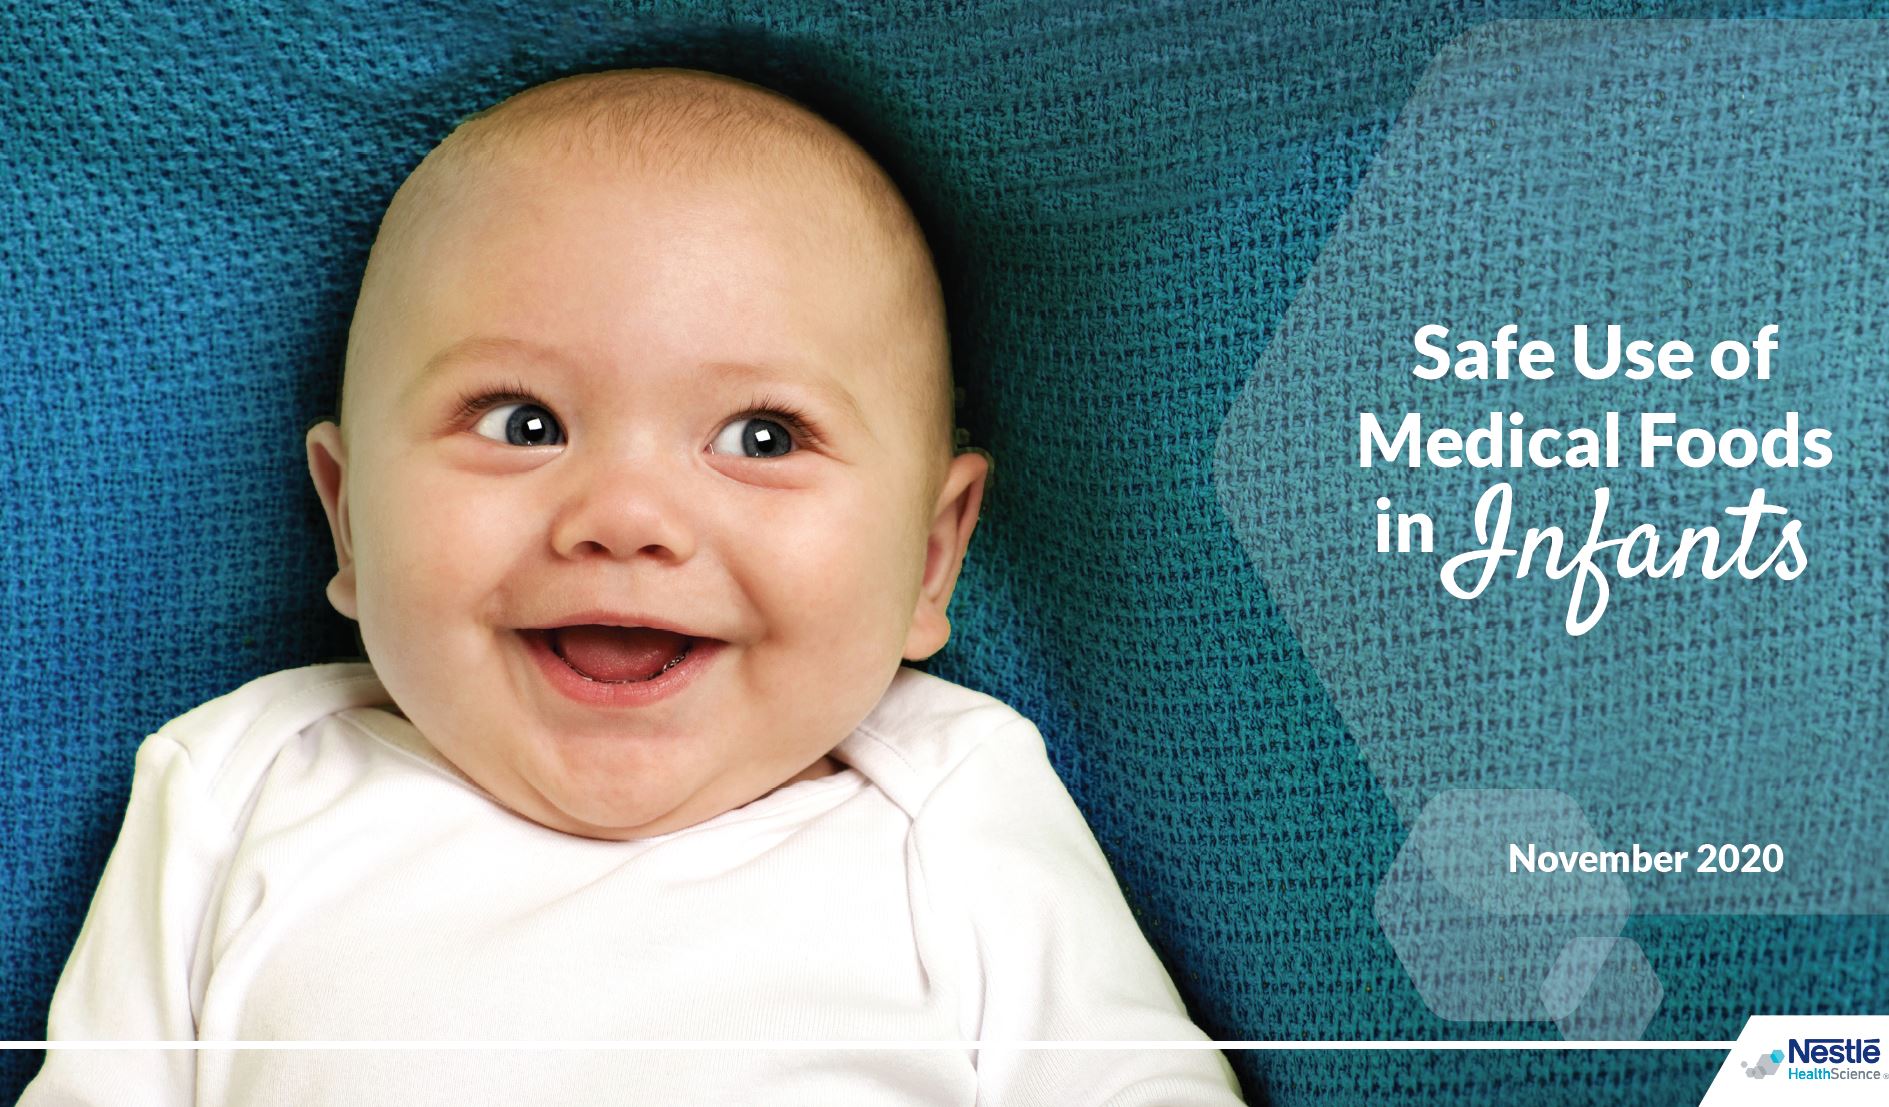 Safe Use of Medical Foods in Infants